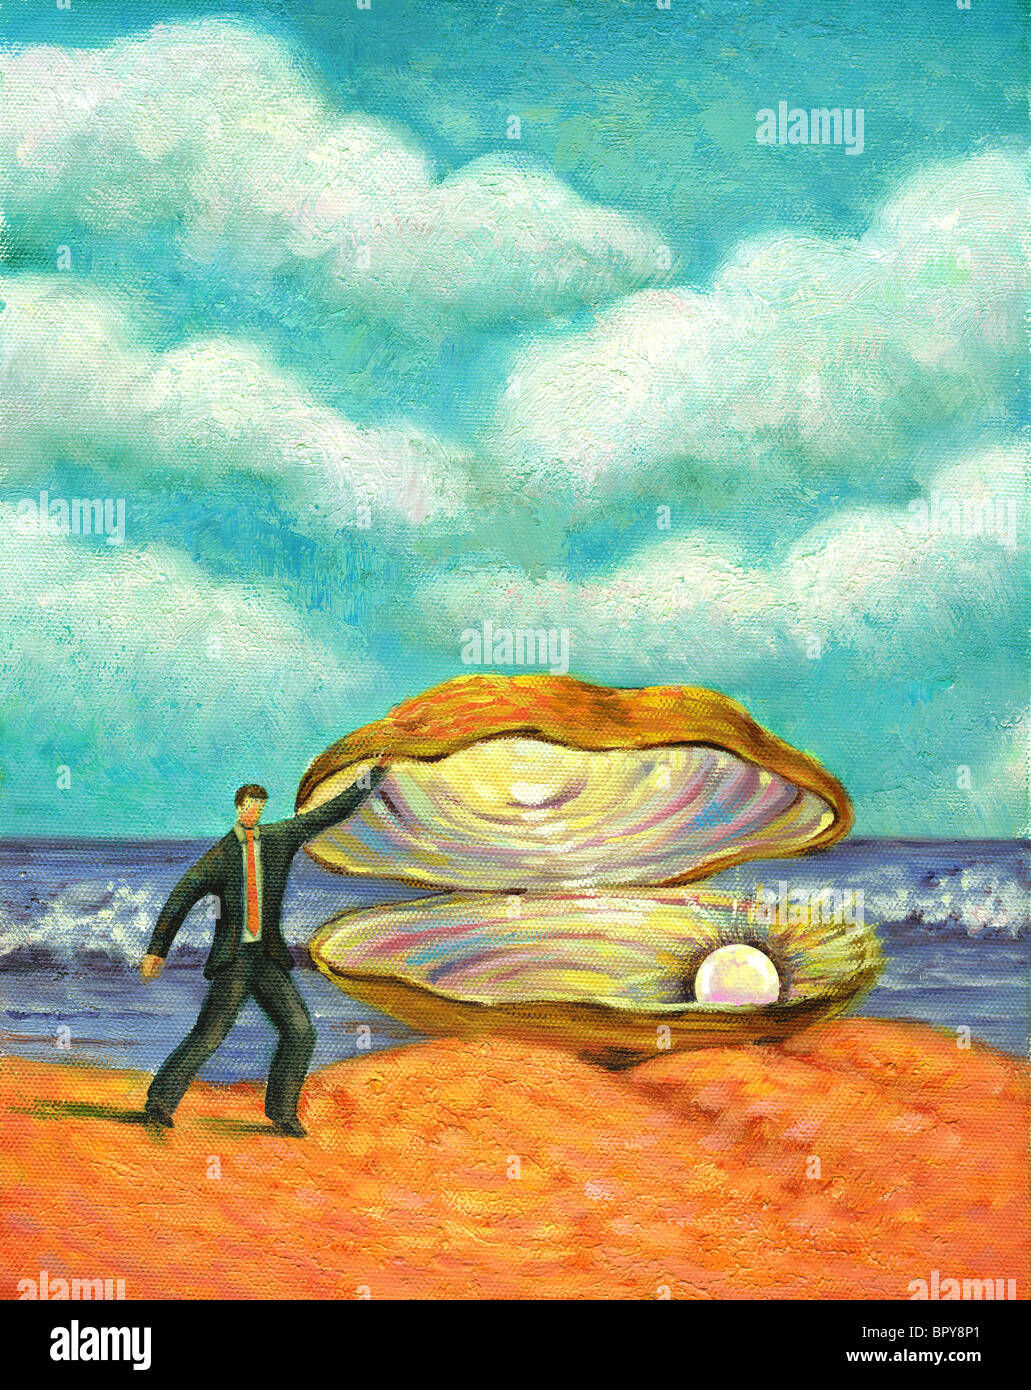 Un homme à la recherche à une perle dans une énorme coquille d'huître Banque D'Images